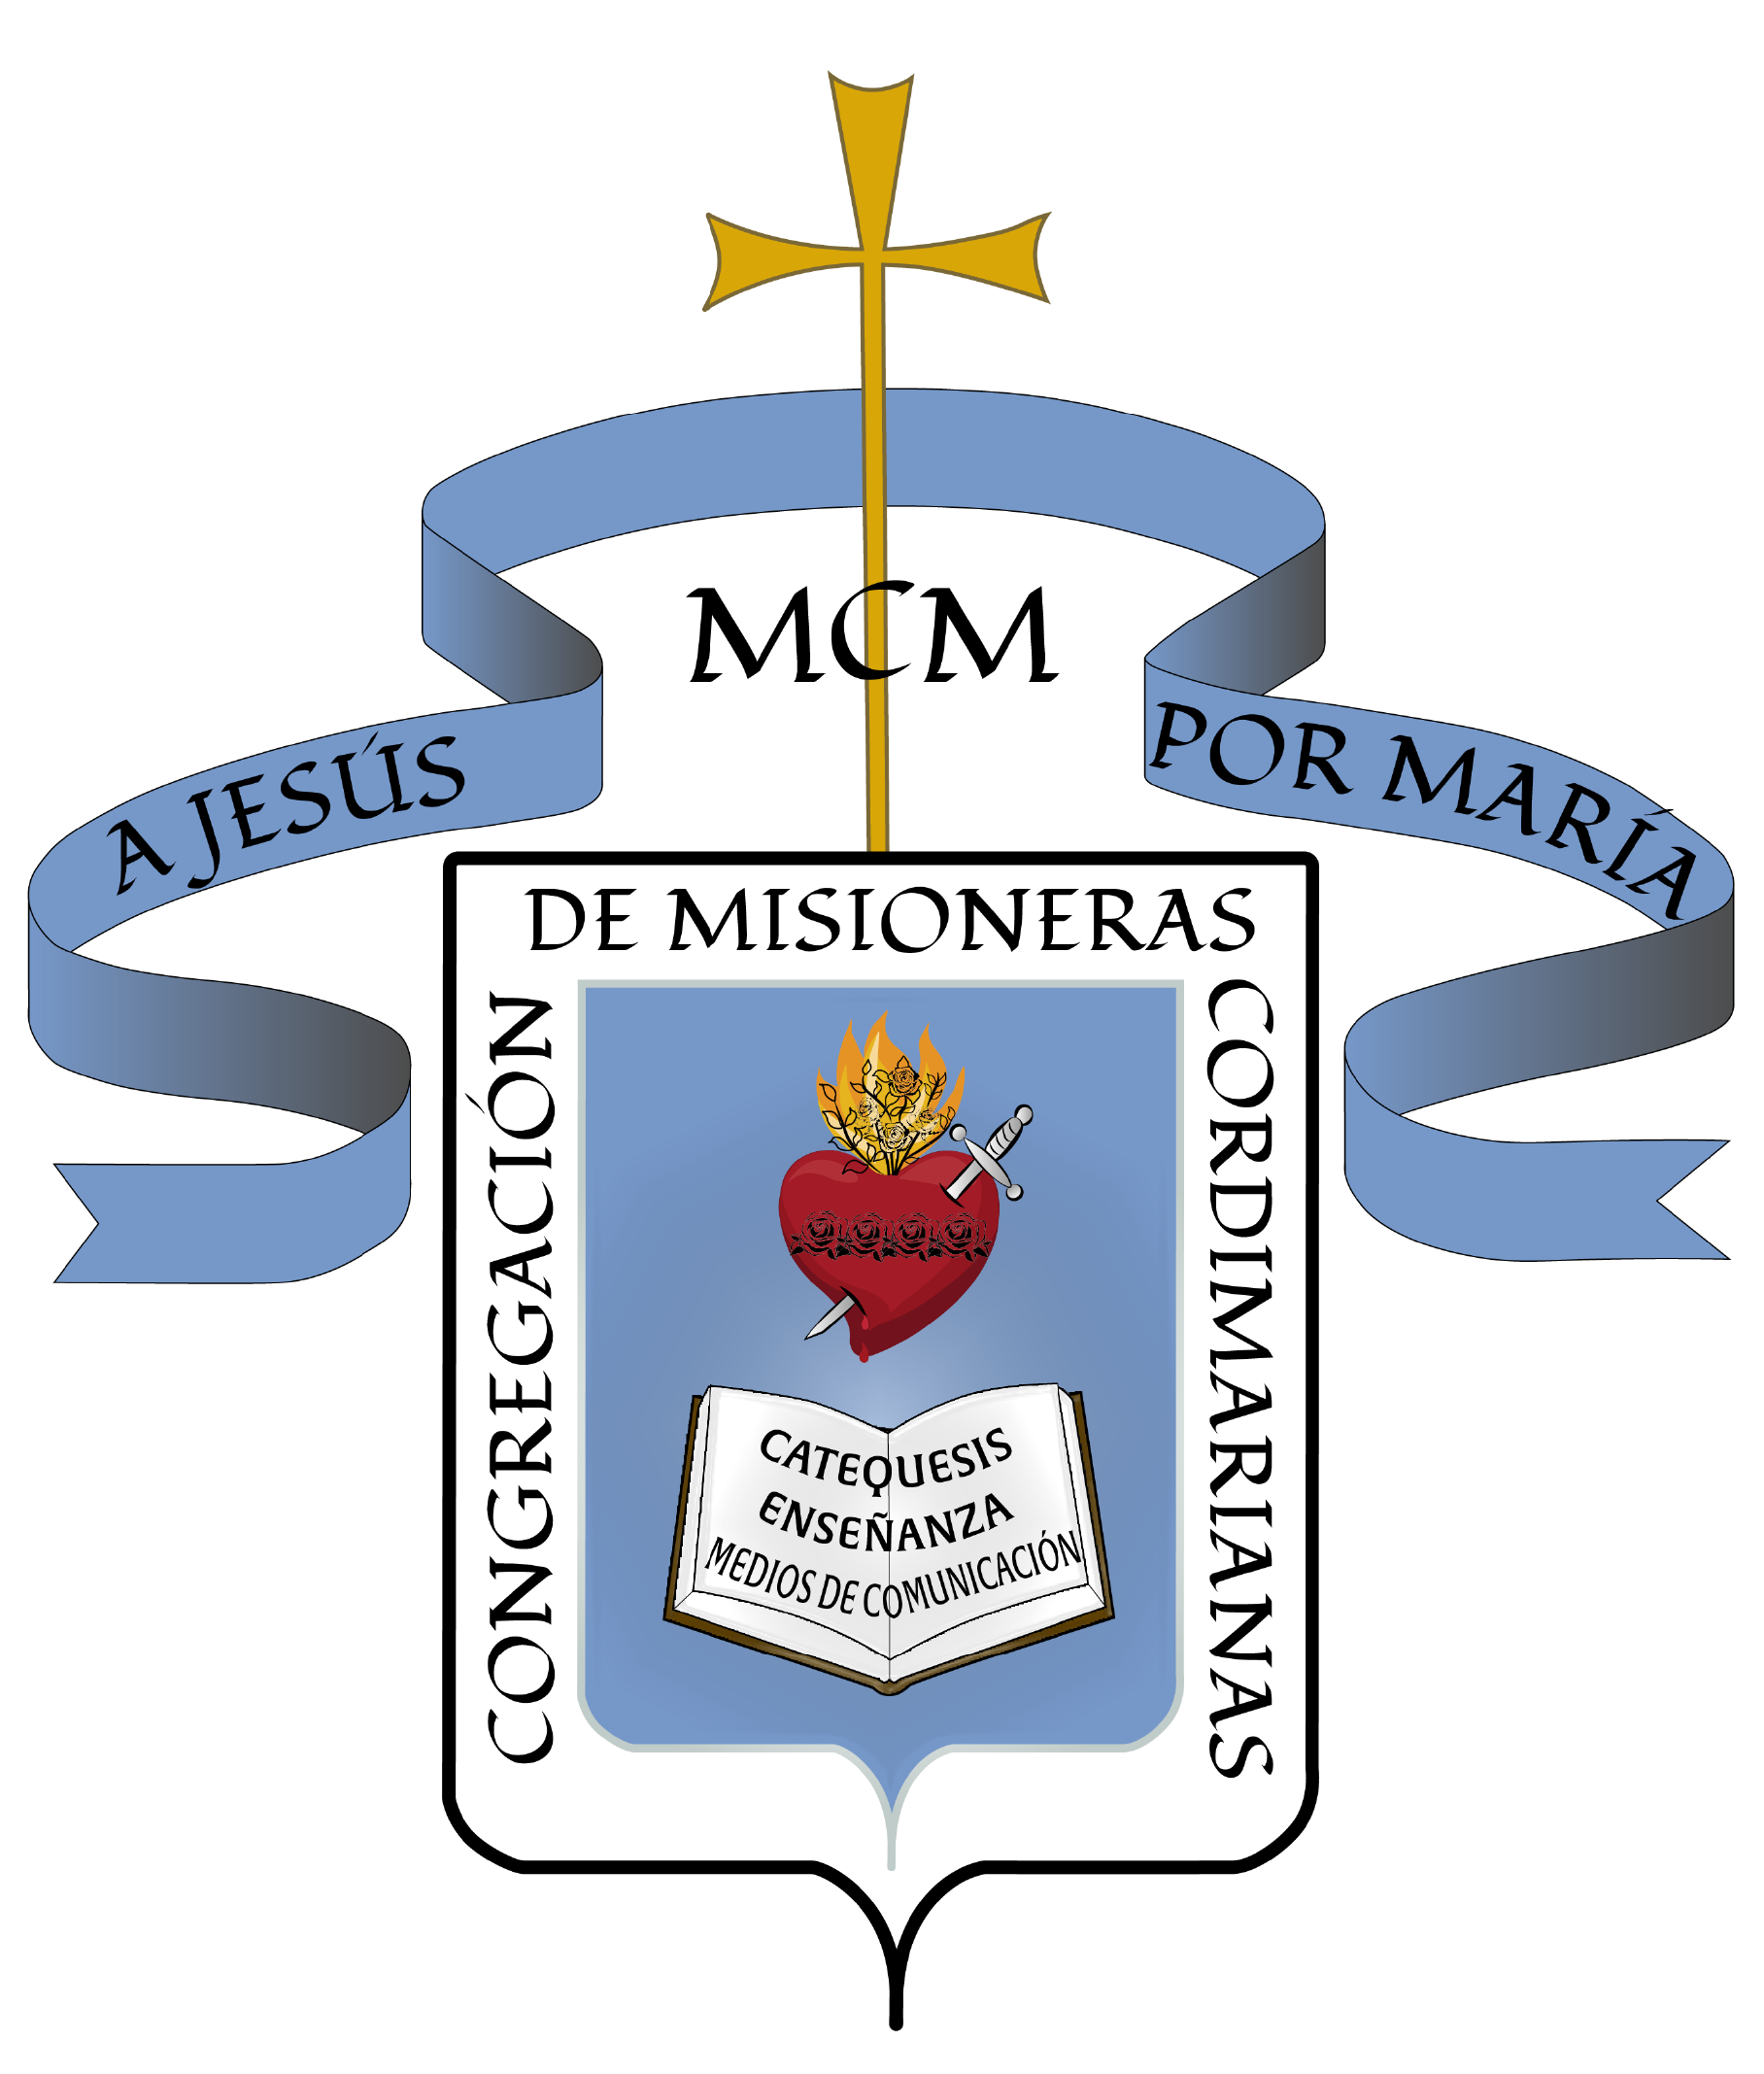 Misioneras Cordimarianas - México